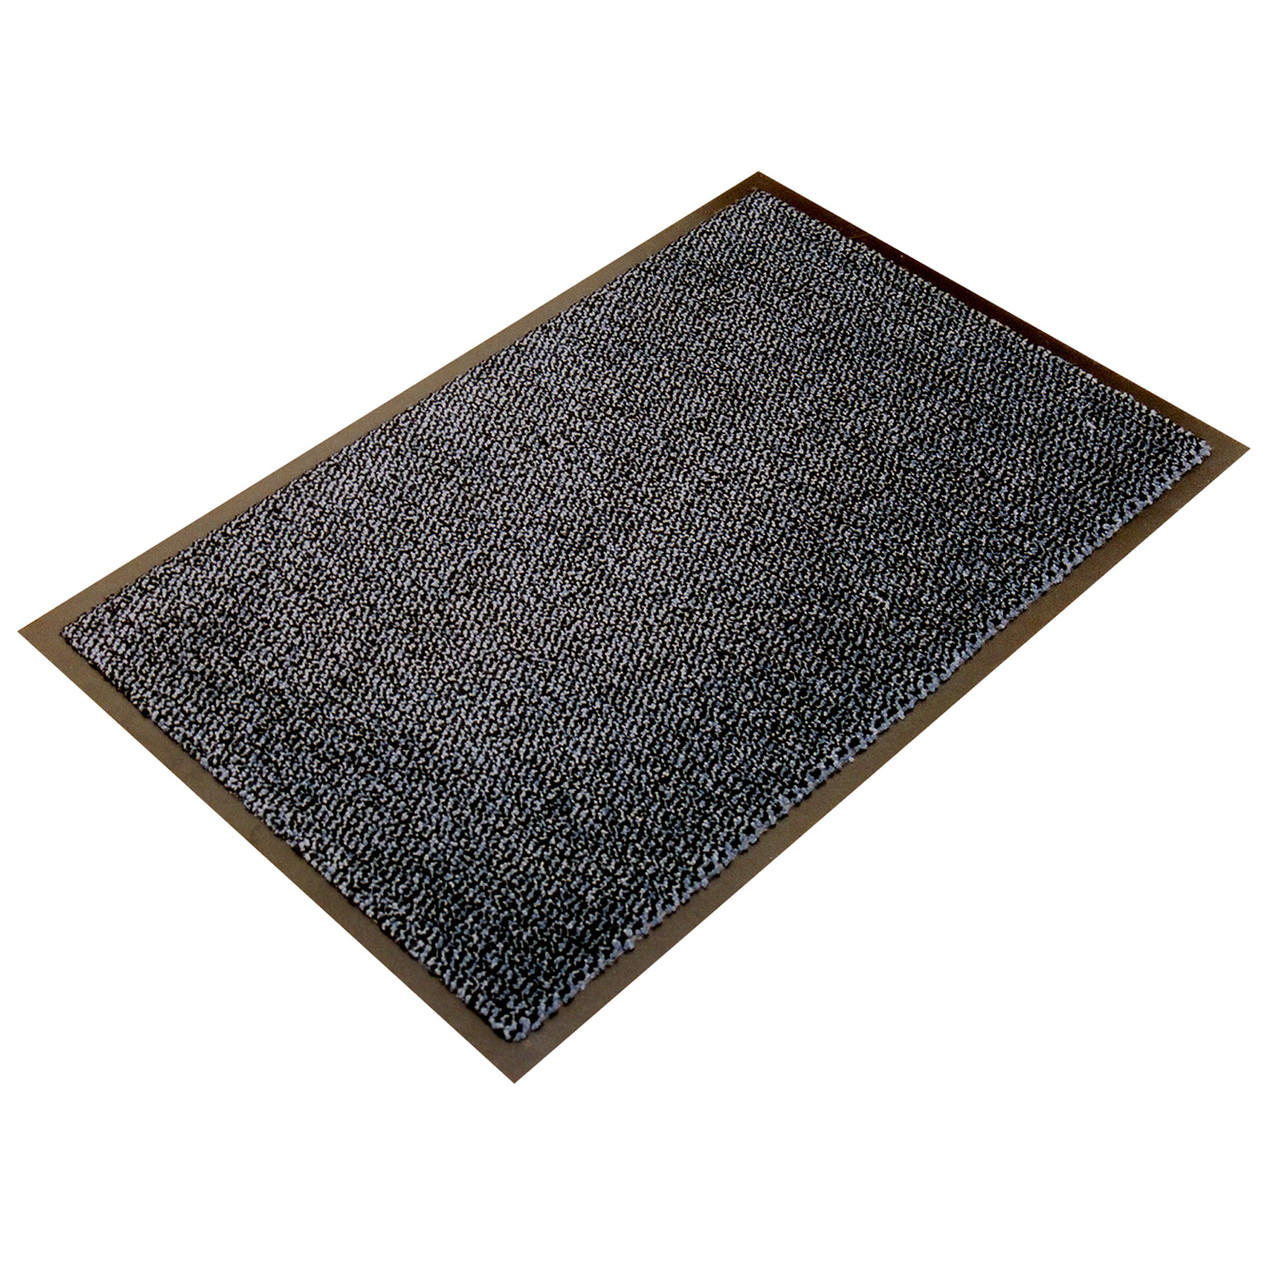 Ultralux Scraper Entrance Mat, Polypropylene Fibers and Anti-Slip Vinyl  Backed Indoor Entry Rug Doormat, Brown